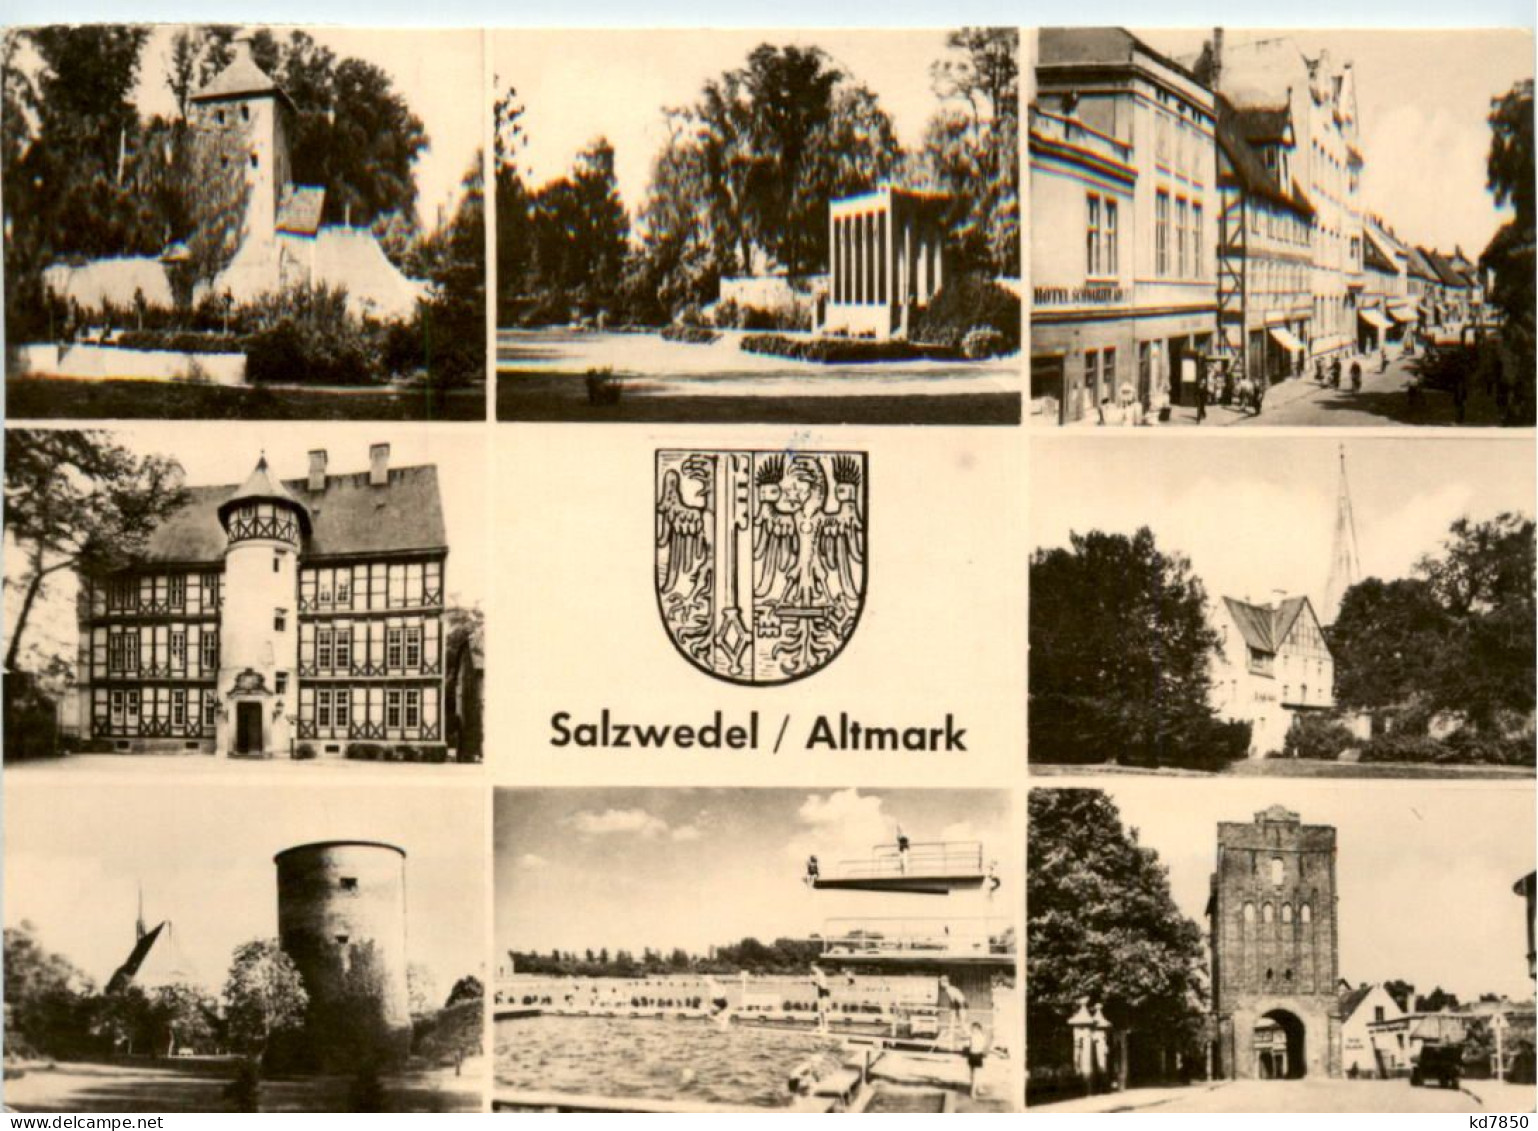 Salzwedel - Salzwedel